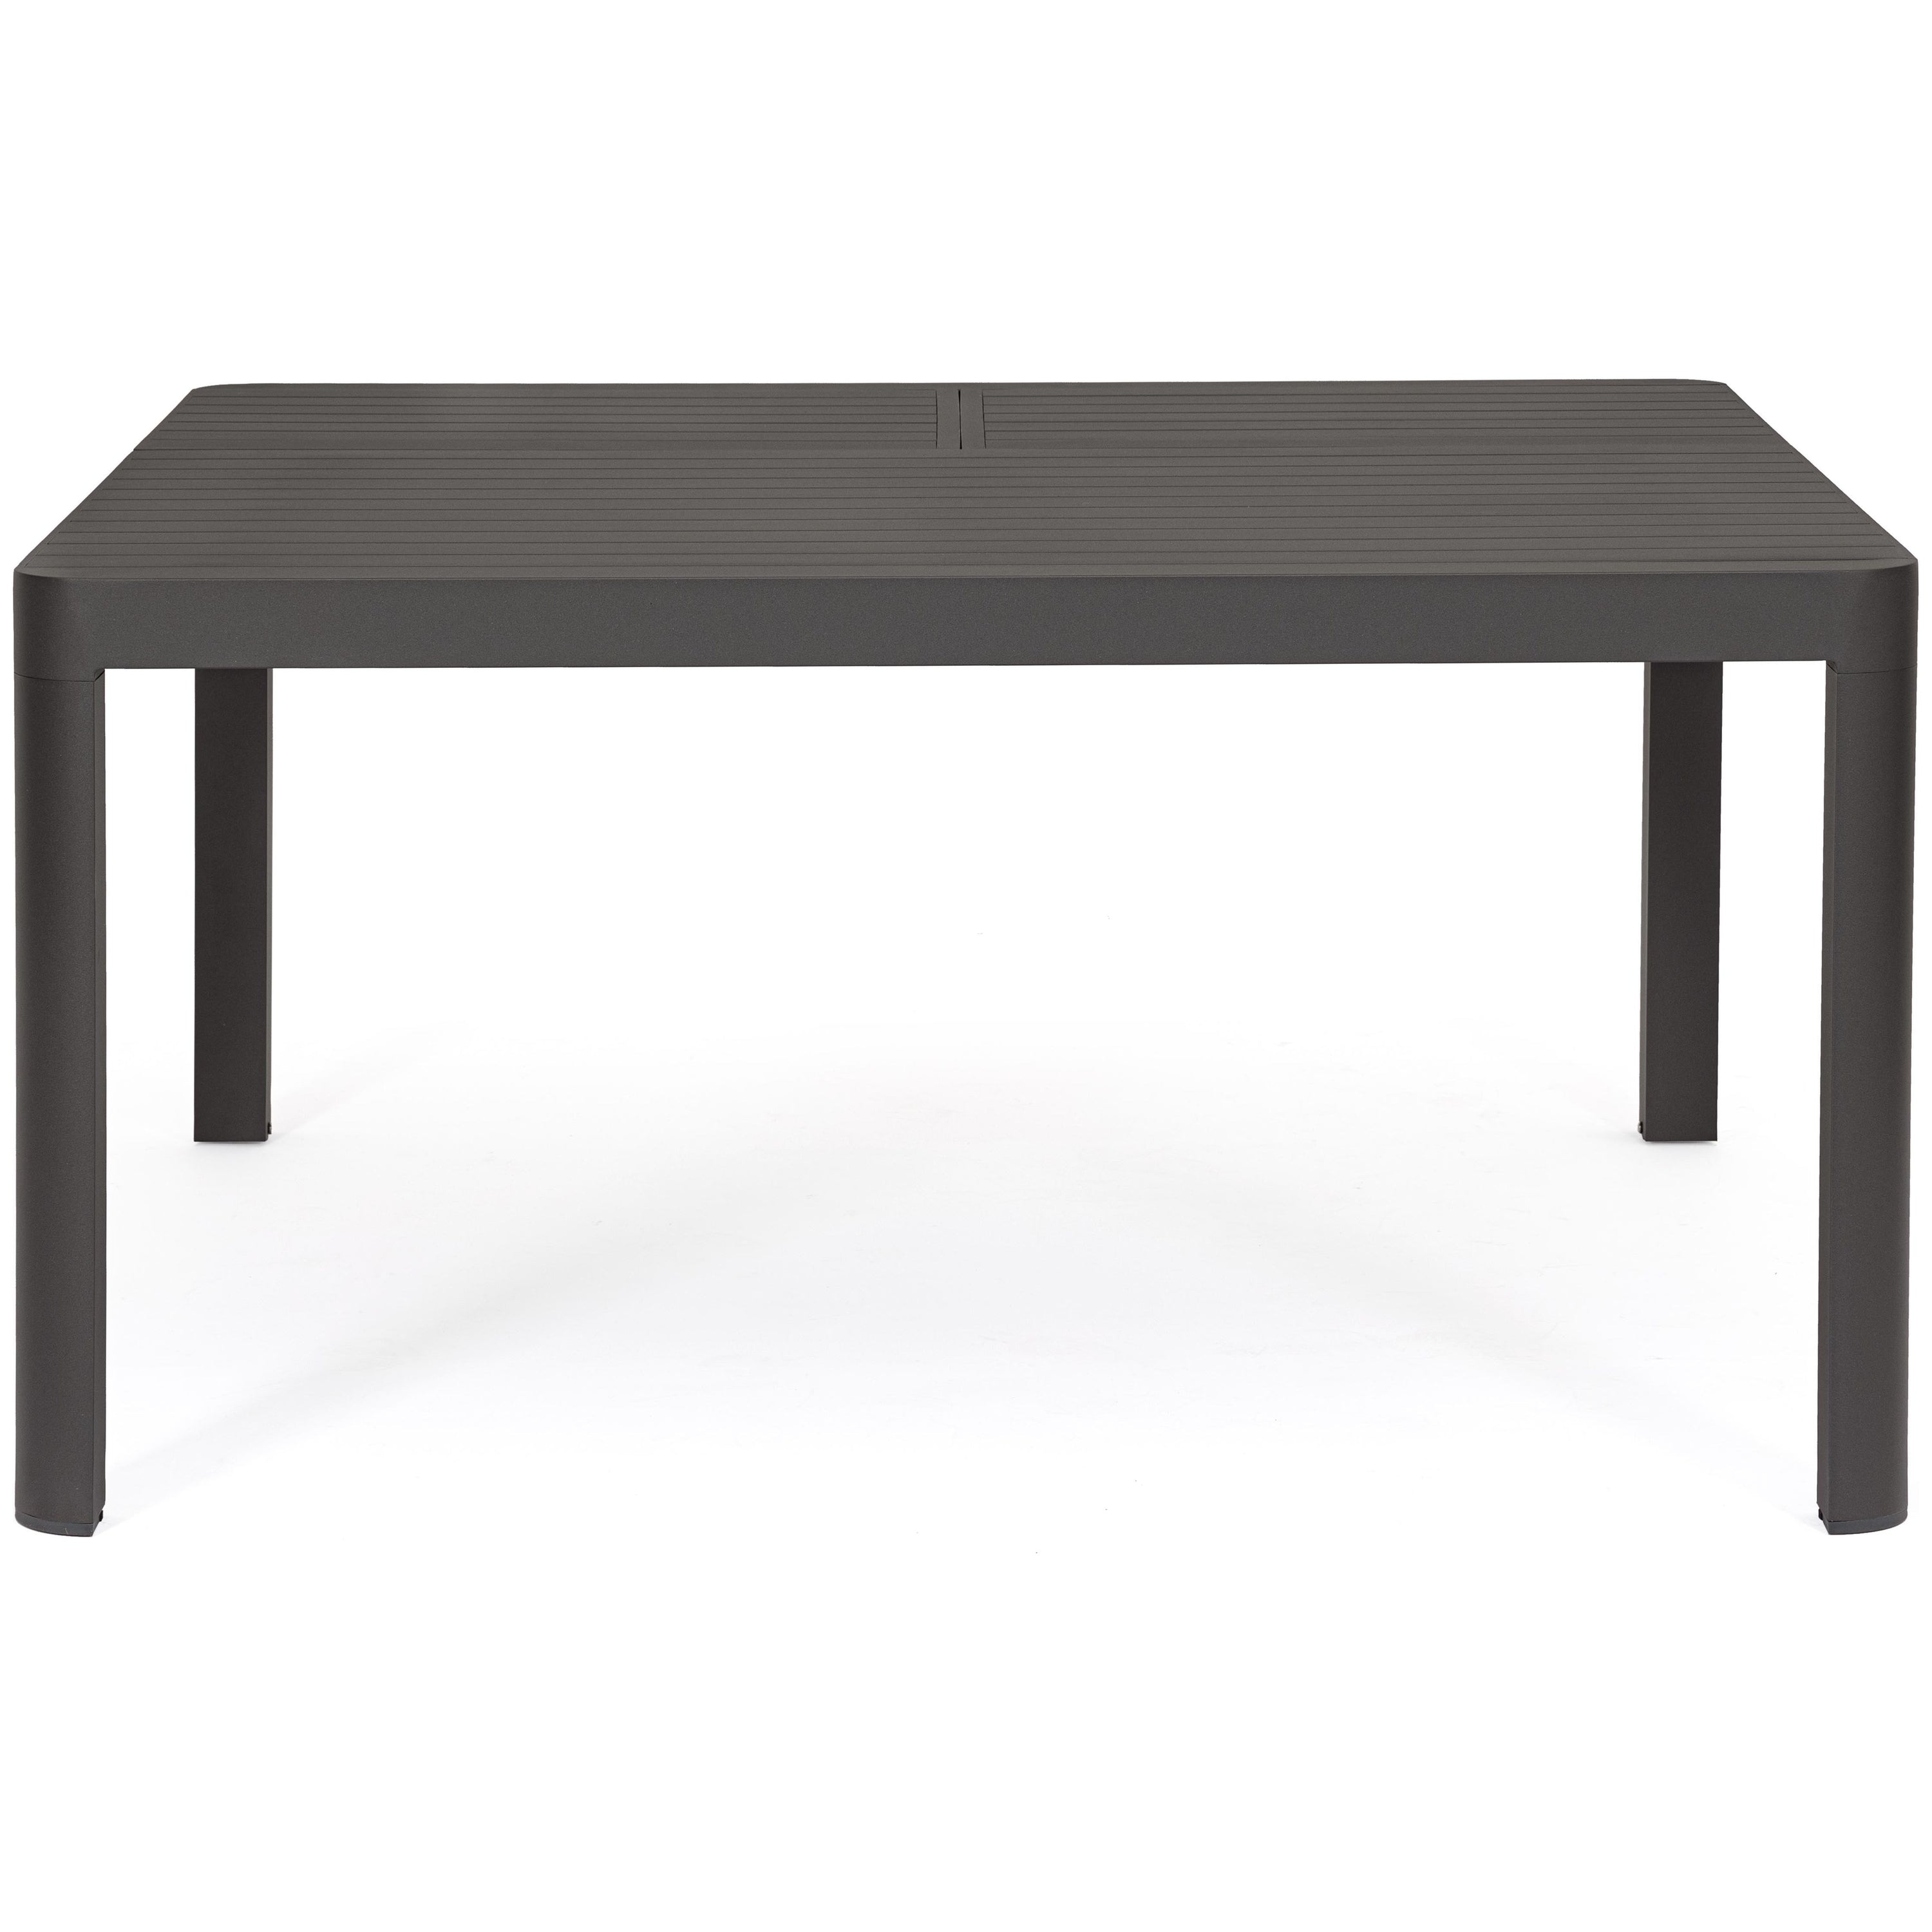 KIPLIN prasiilginantis lauko valgomojo stalas, 149-97x149cm, tamsiai pilkas